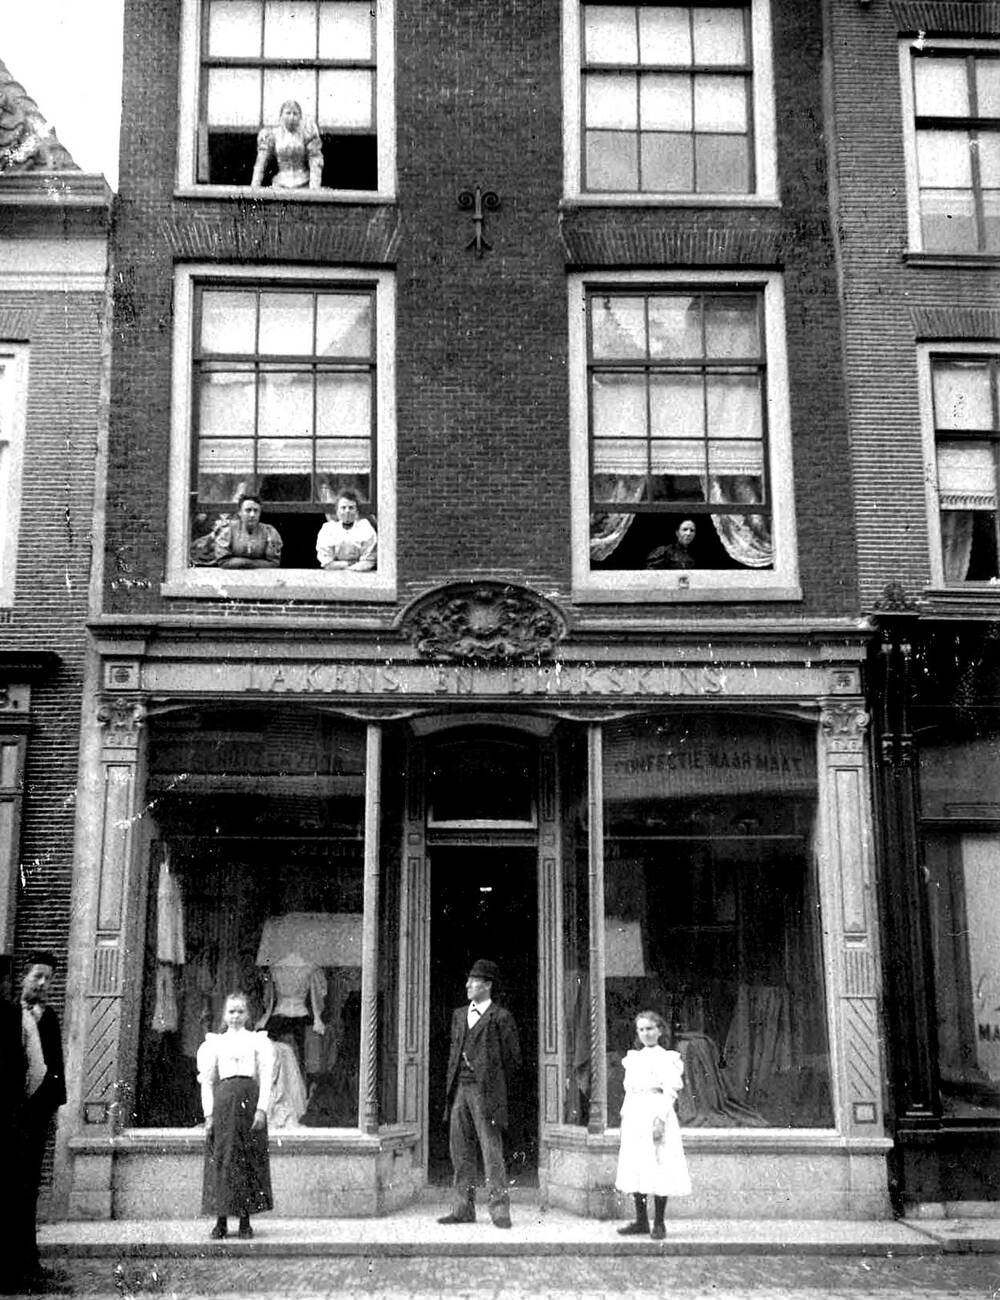 People standing outside of a building on Langestraat in Alkmaar Netherlands, 1900